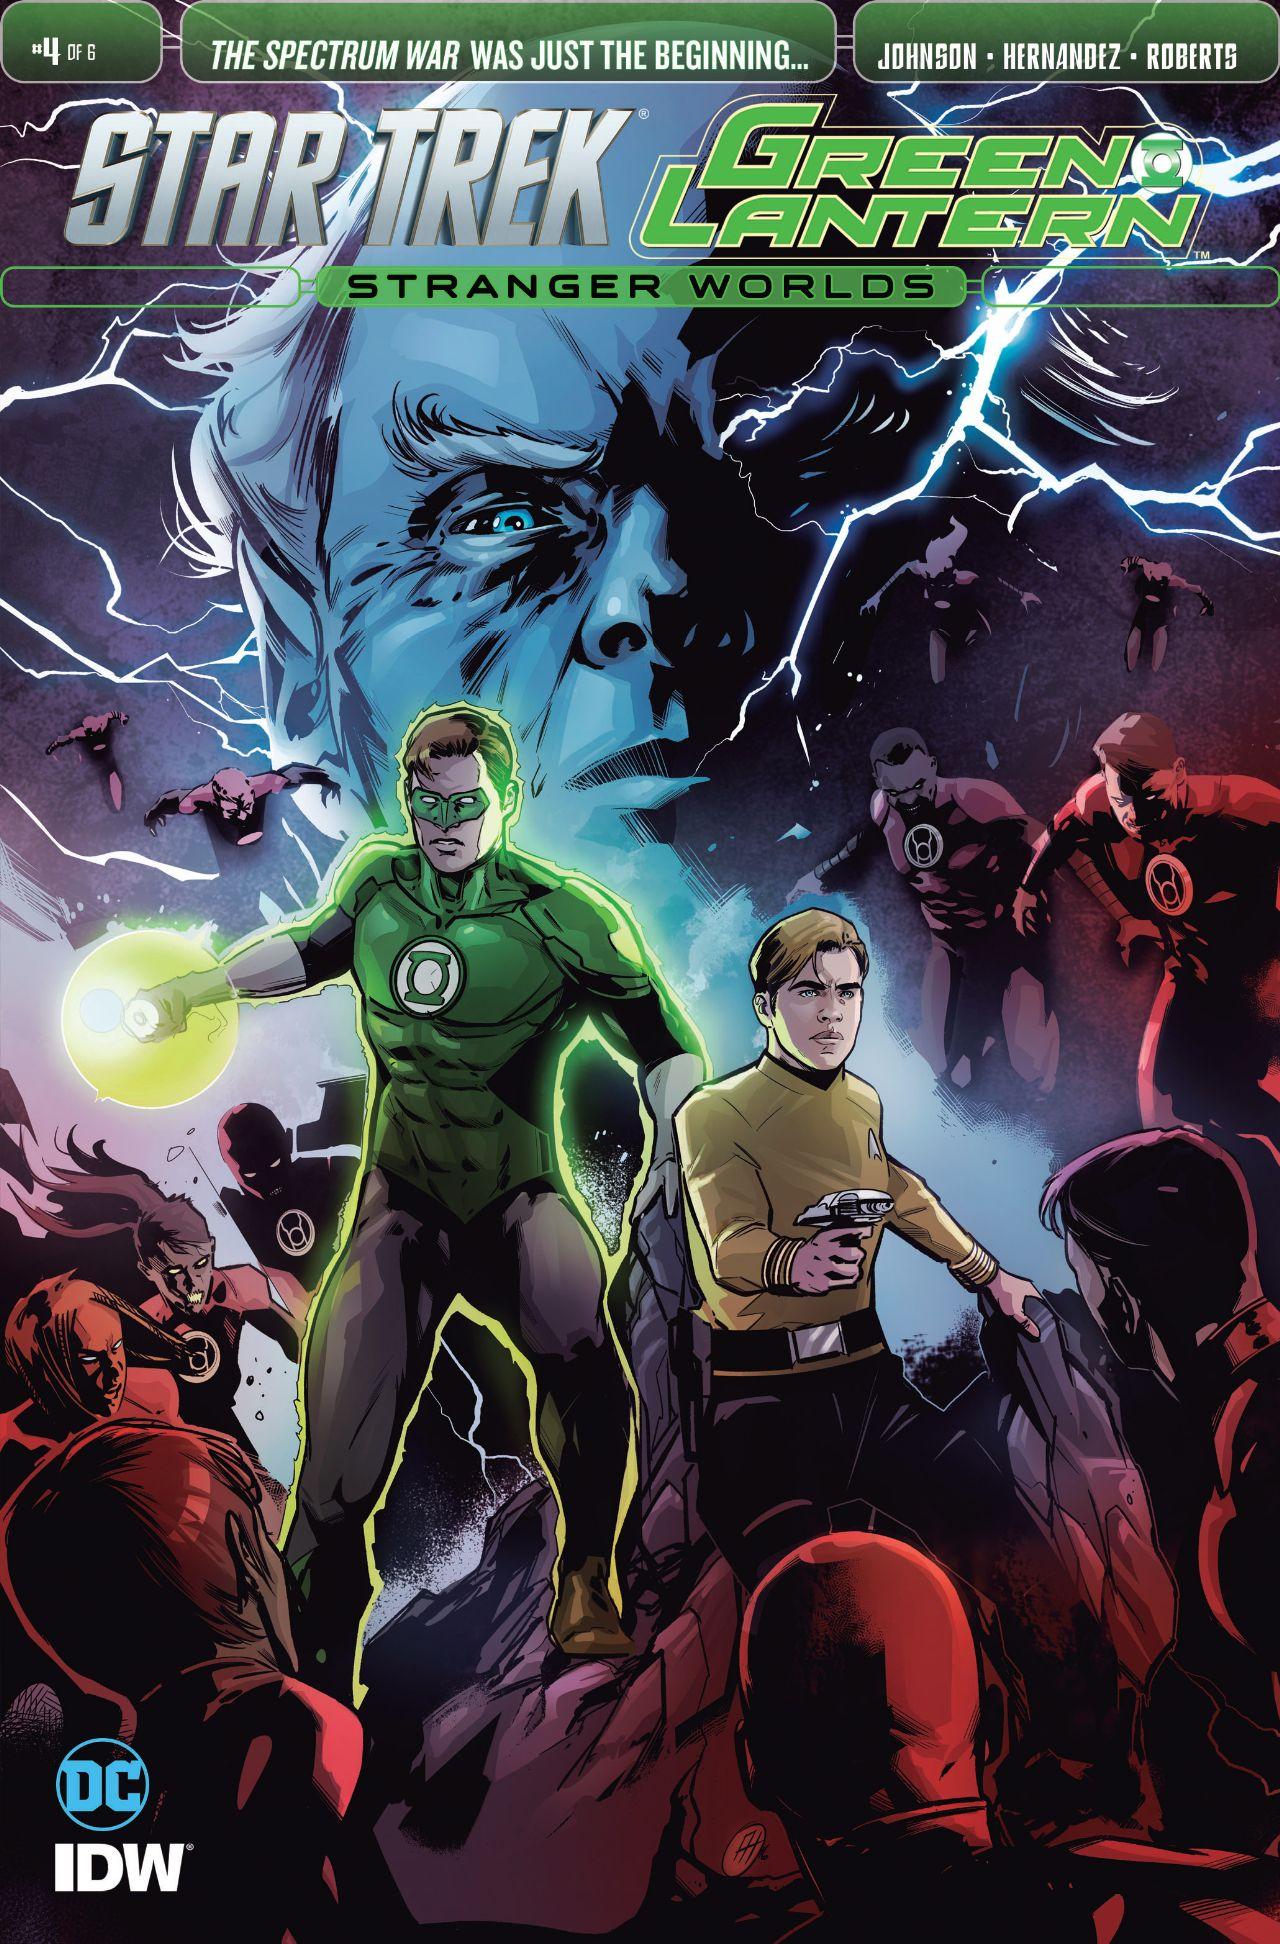 Star Trek/Green Lantern: Stranger Worlds Vol. 1 #4